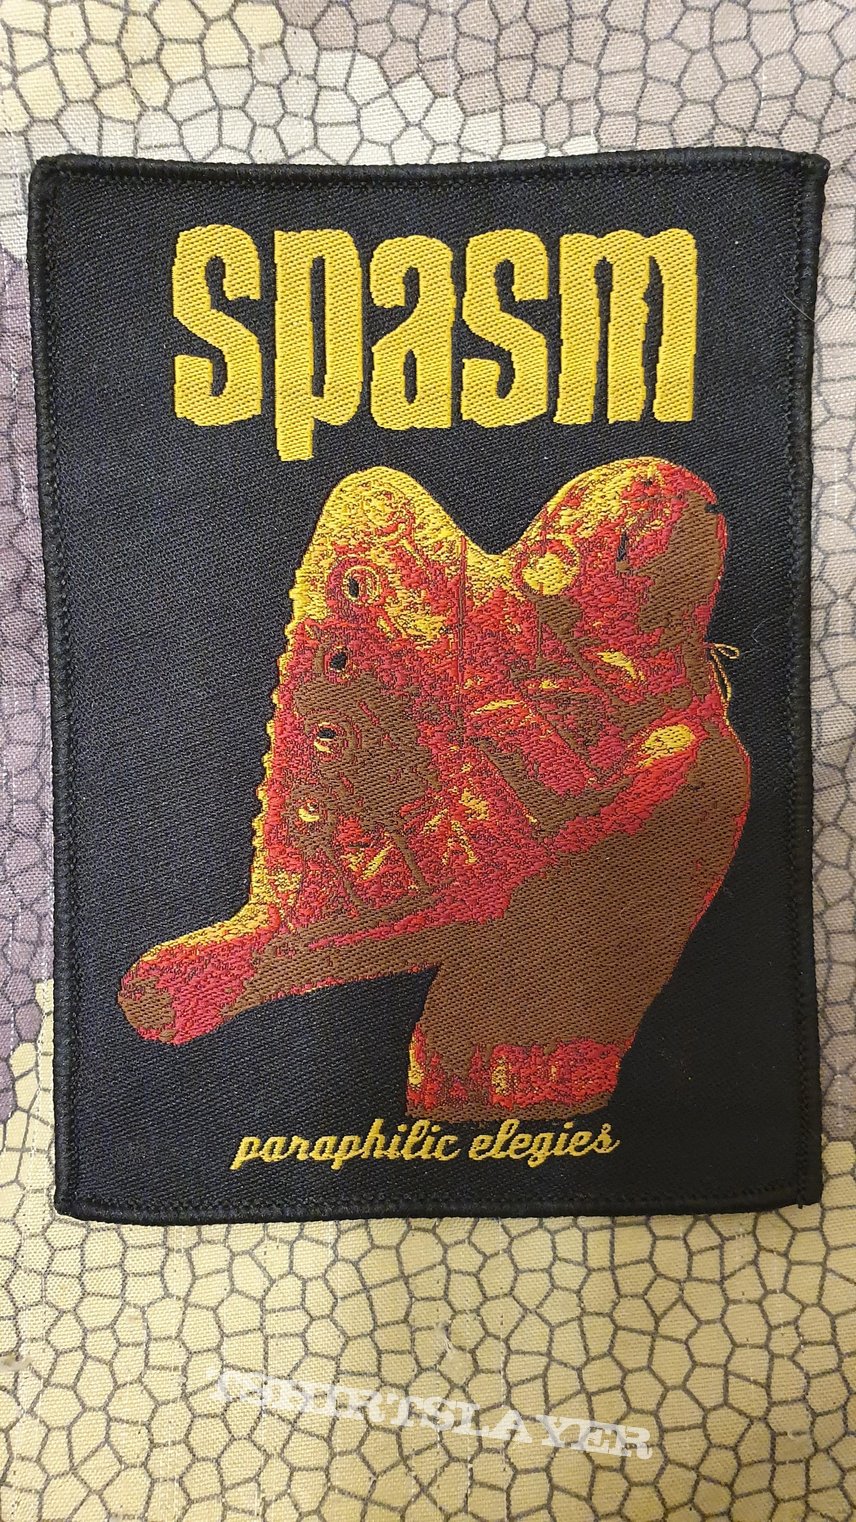 Spasm - Paraphilic Elegies - patch